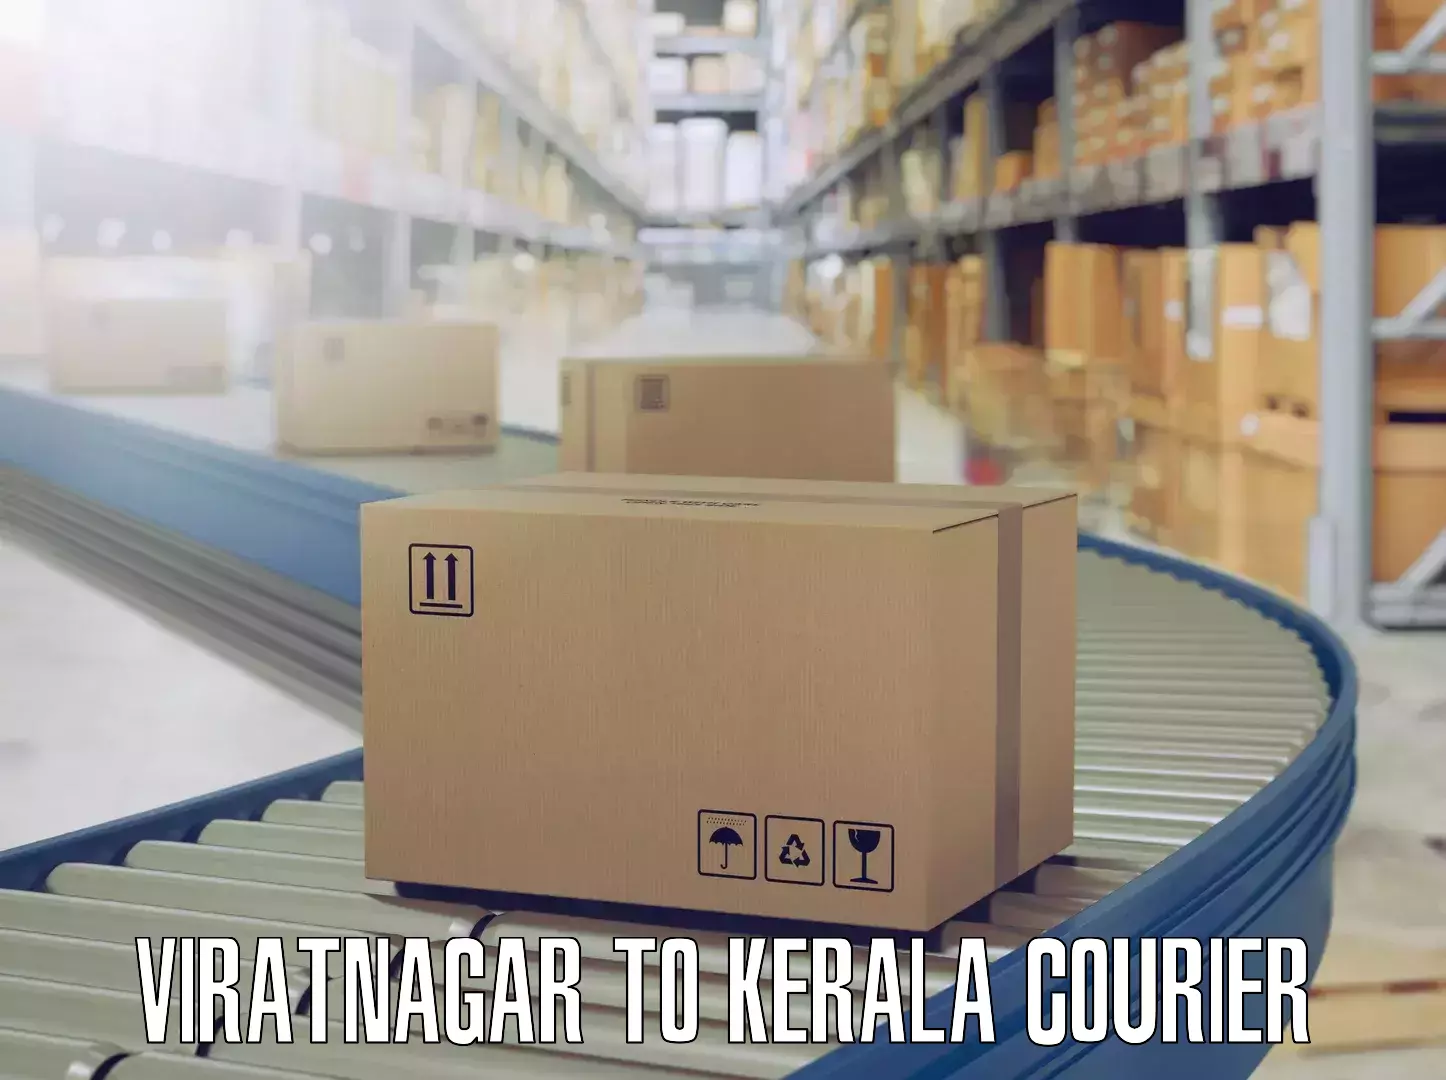 Reliable goods transport Viratnagar to Pala